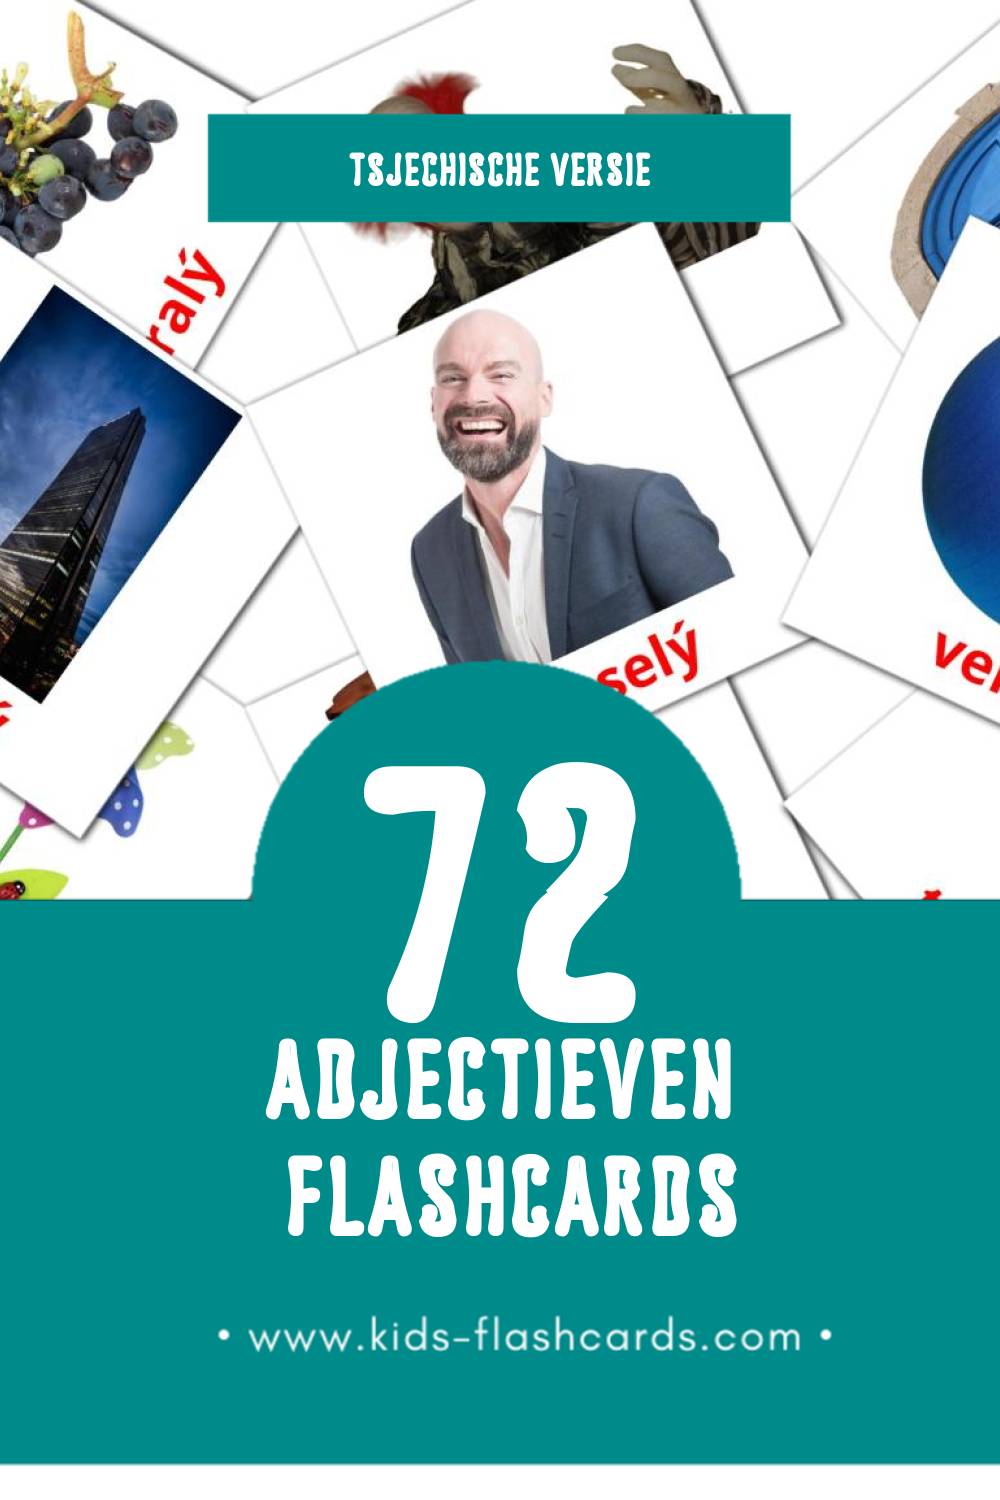 Visuele Přídavná jména Flashcards voor Kleuters (72 kaarten in het Tsjechisch)